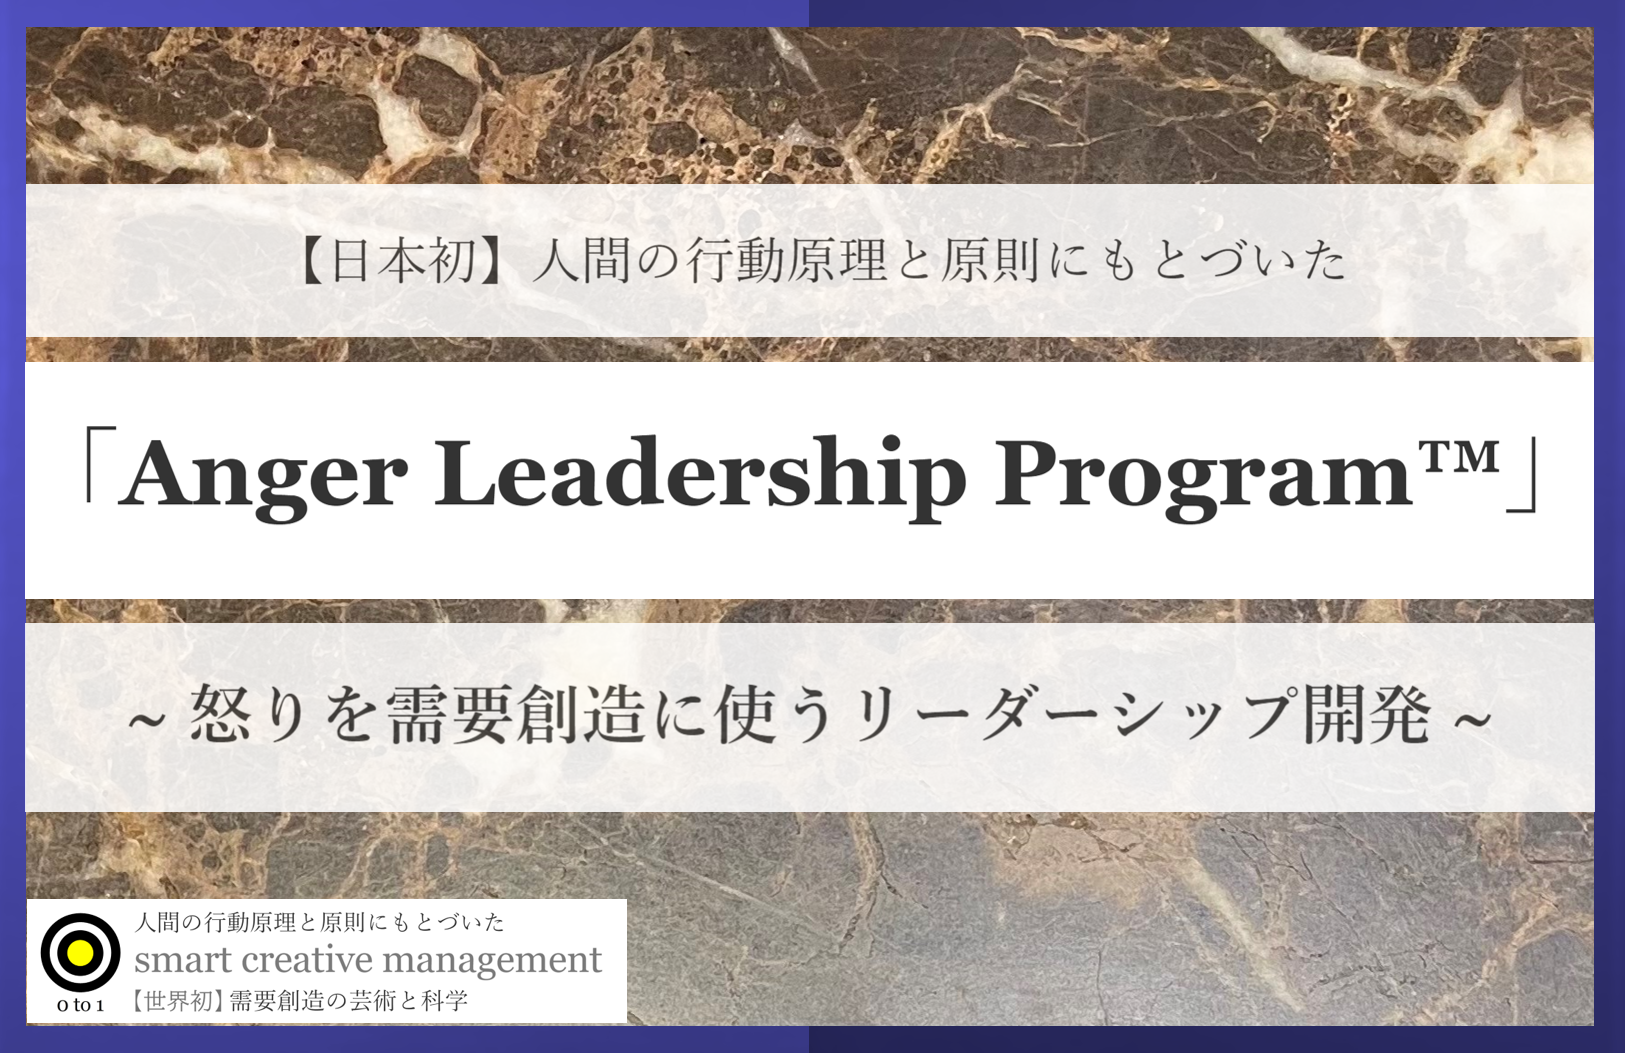 日本初 怒りを需要創造に使うリーダーシップ開発 Anger Leadership Program 発売 リクエスト株式会社のプレスリリース